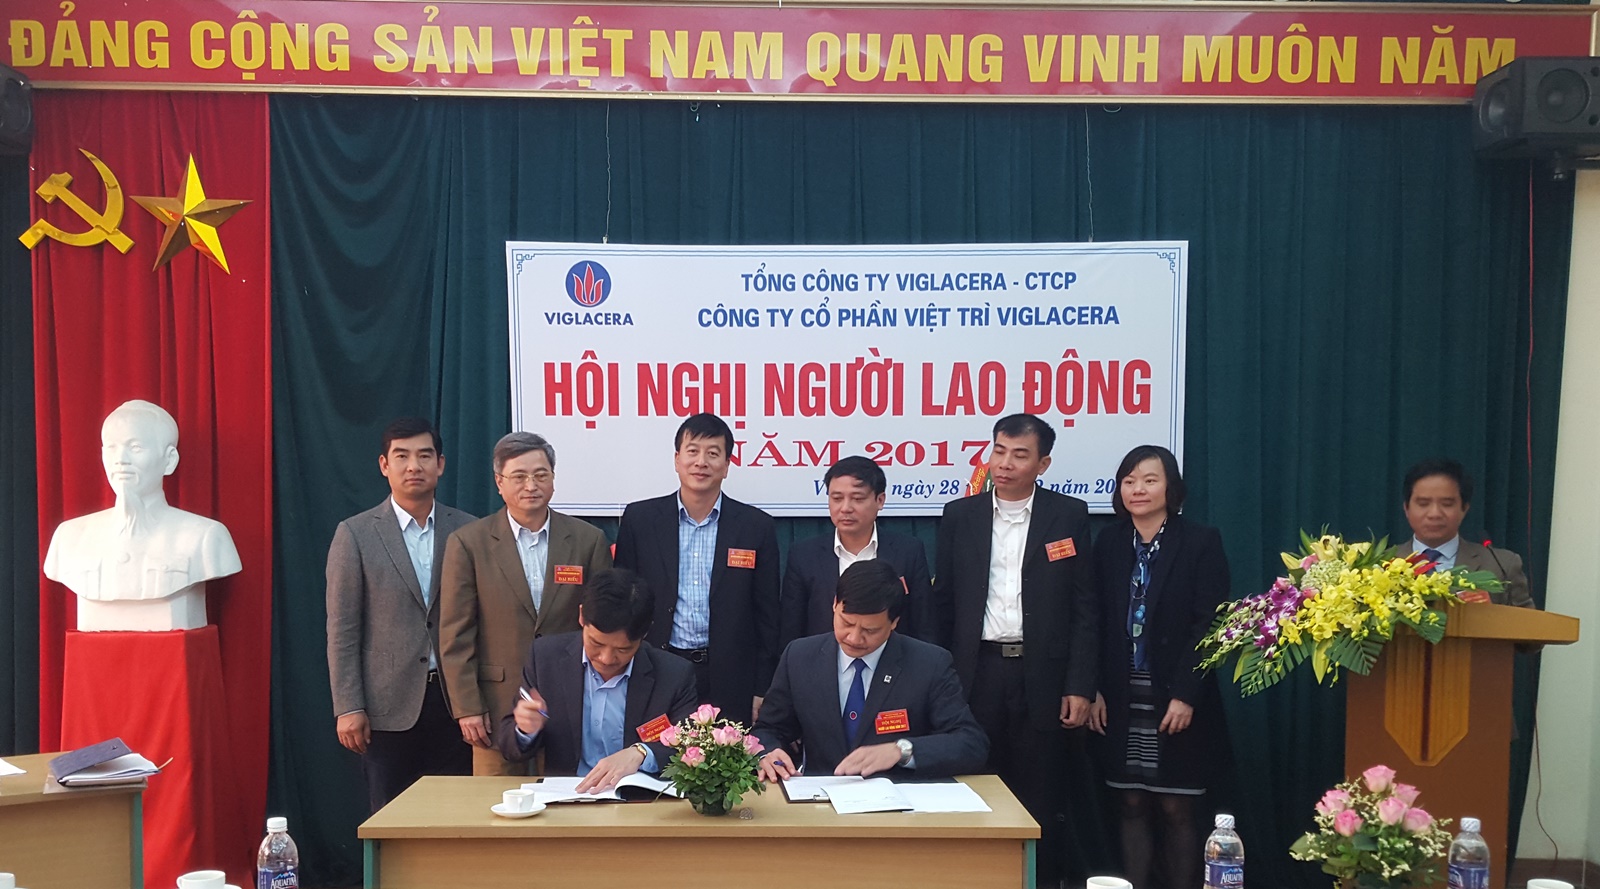 Công ty CP Việt Trì Viglacera  tổ chức Hội nghị người lao động năm 2017